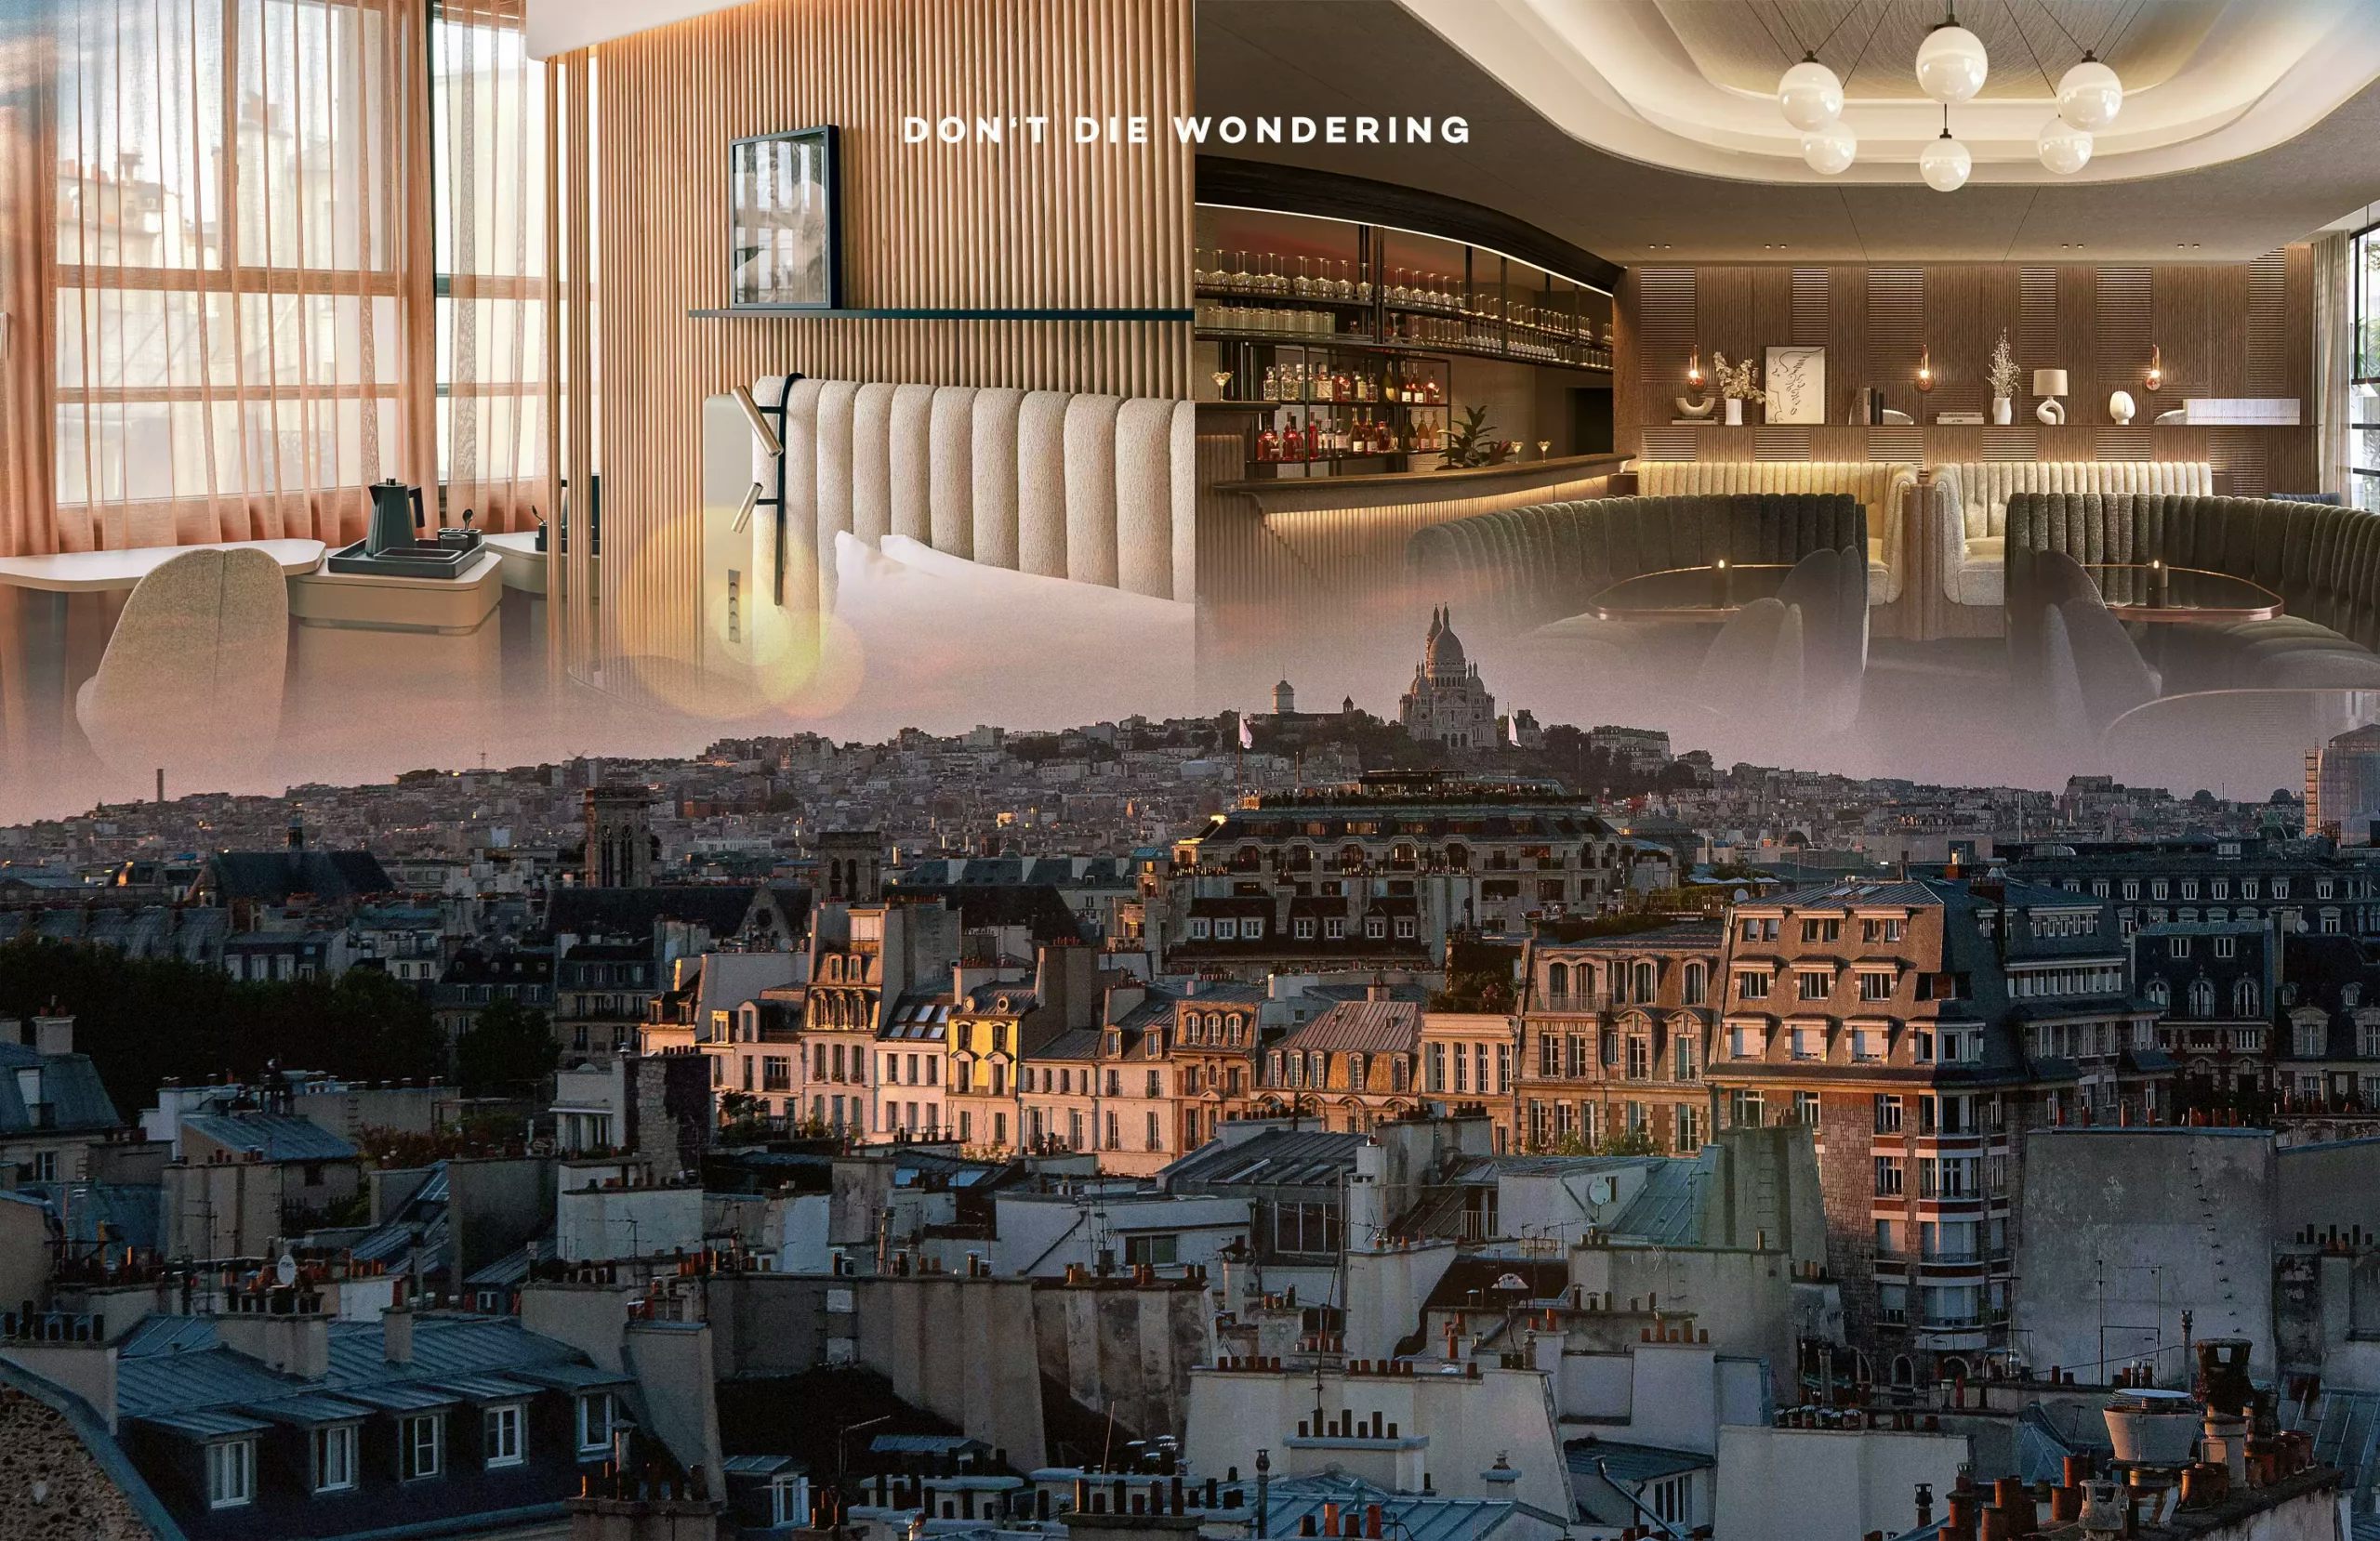 Hôtel Dame des Arts is Opening in Paris’ Rive Gauche